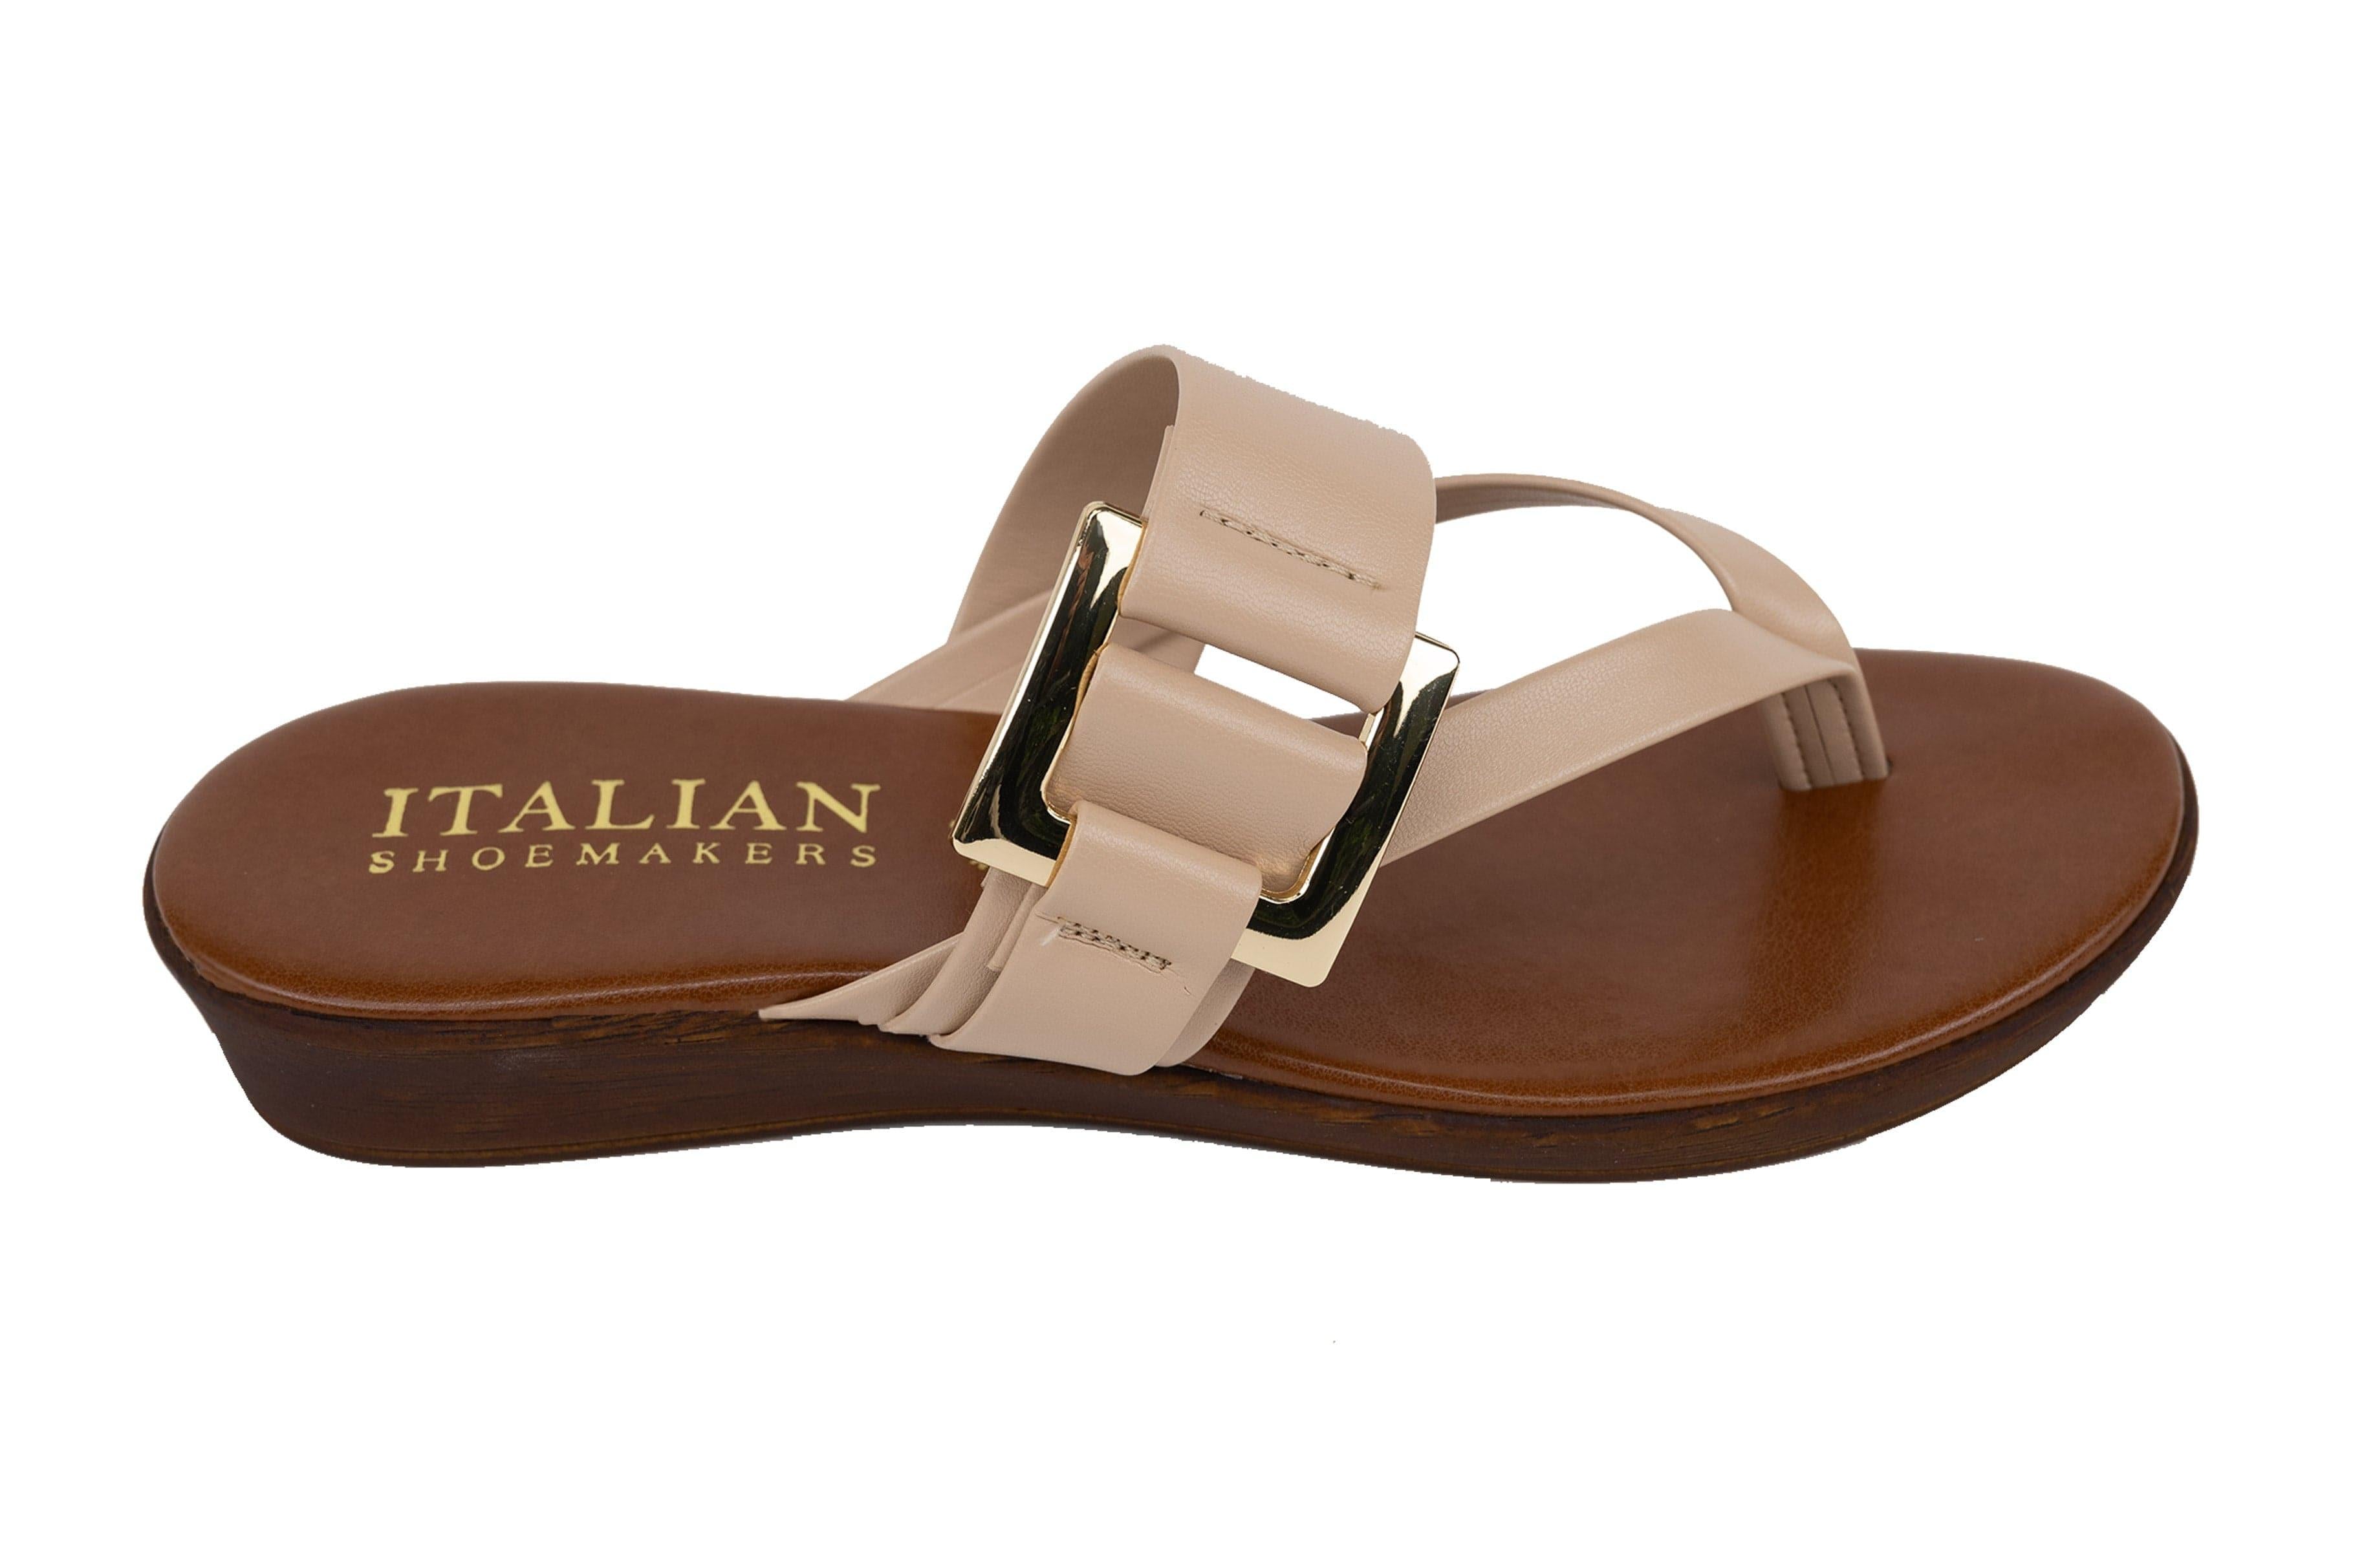 Italian sandals